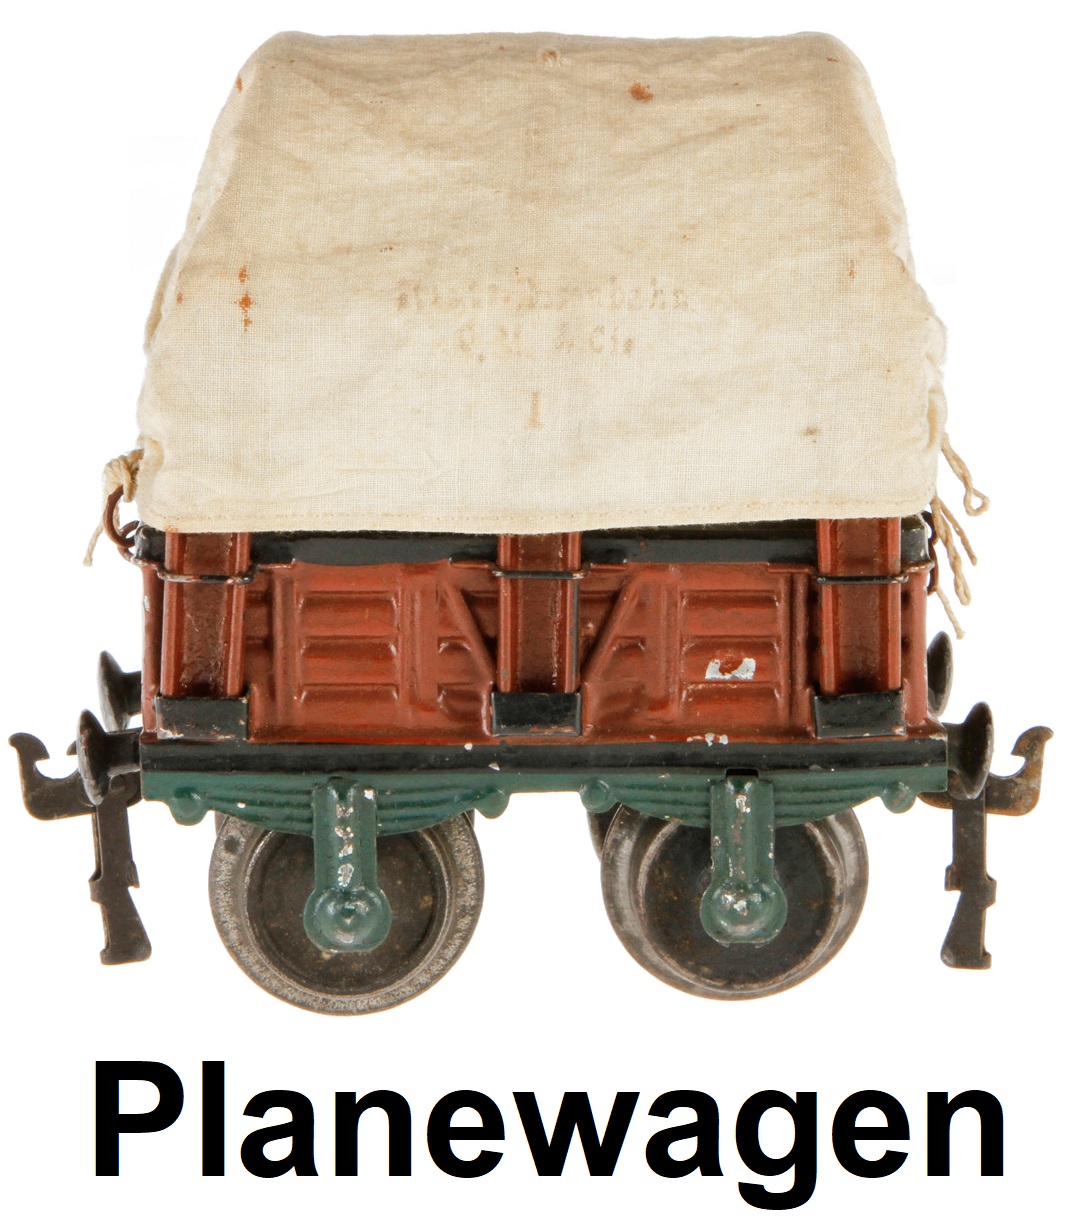 Märklin 1 gauge Planewagen #1810 covered wagon